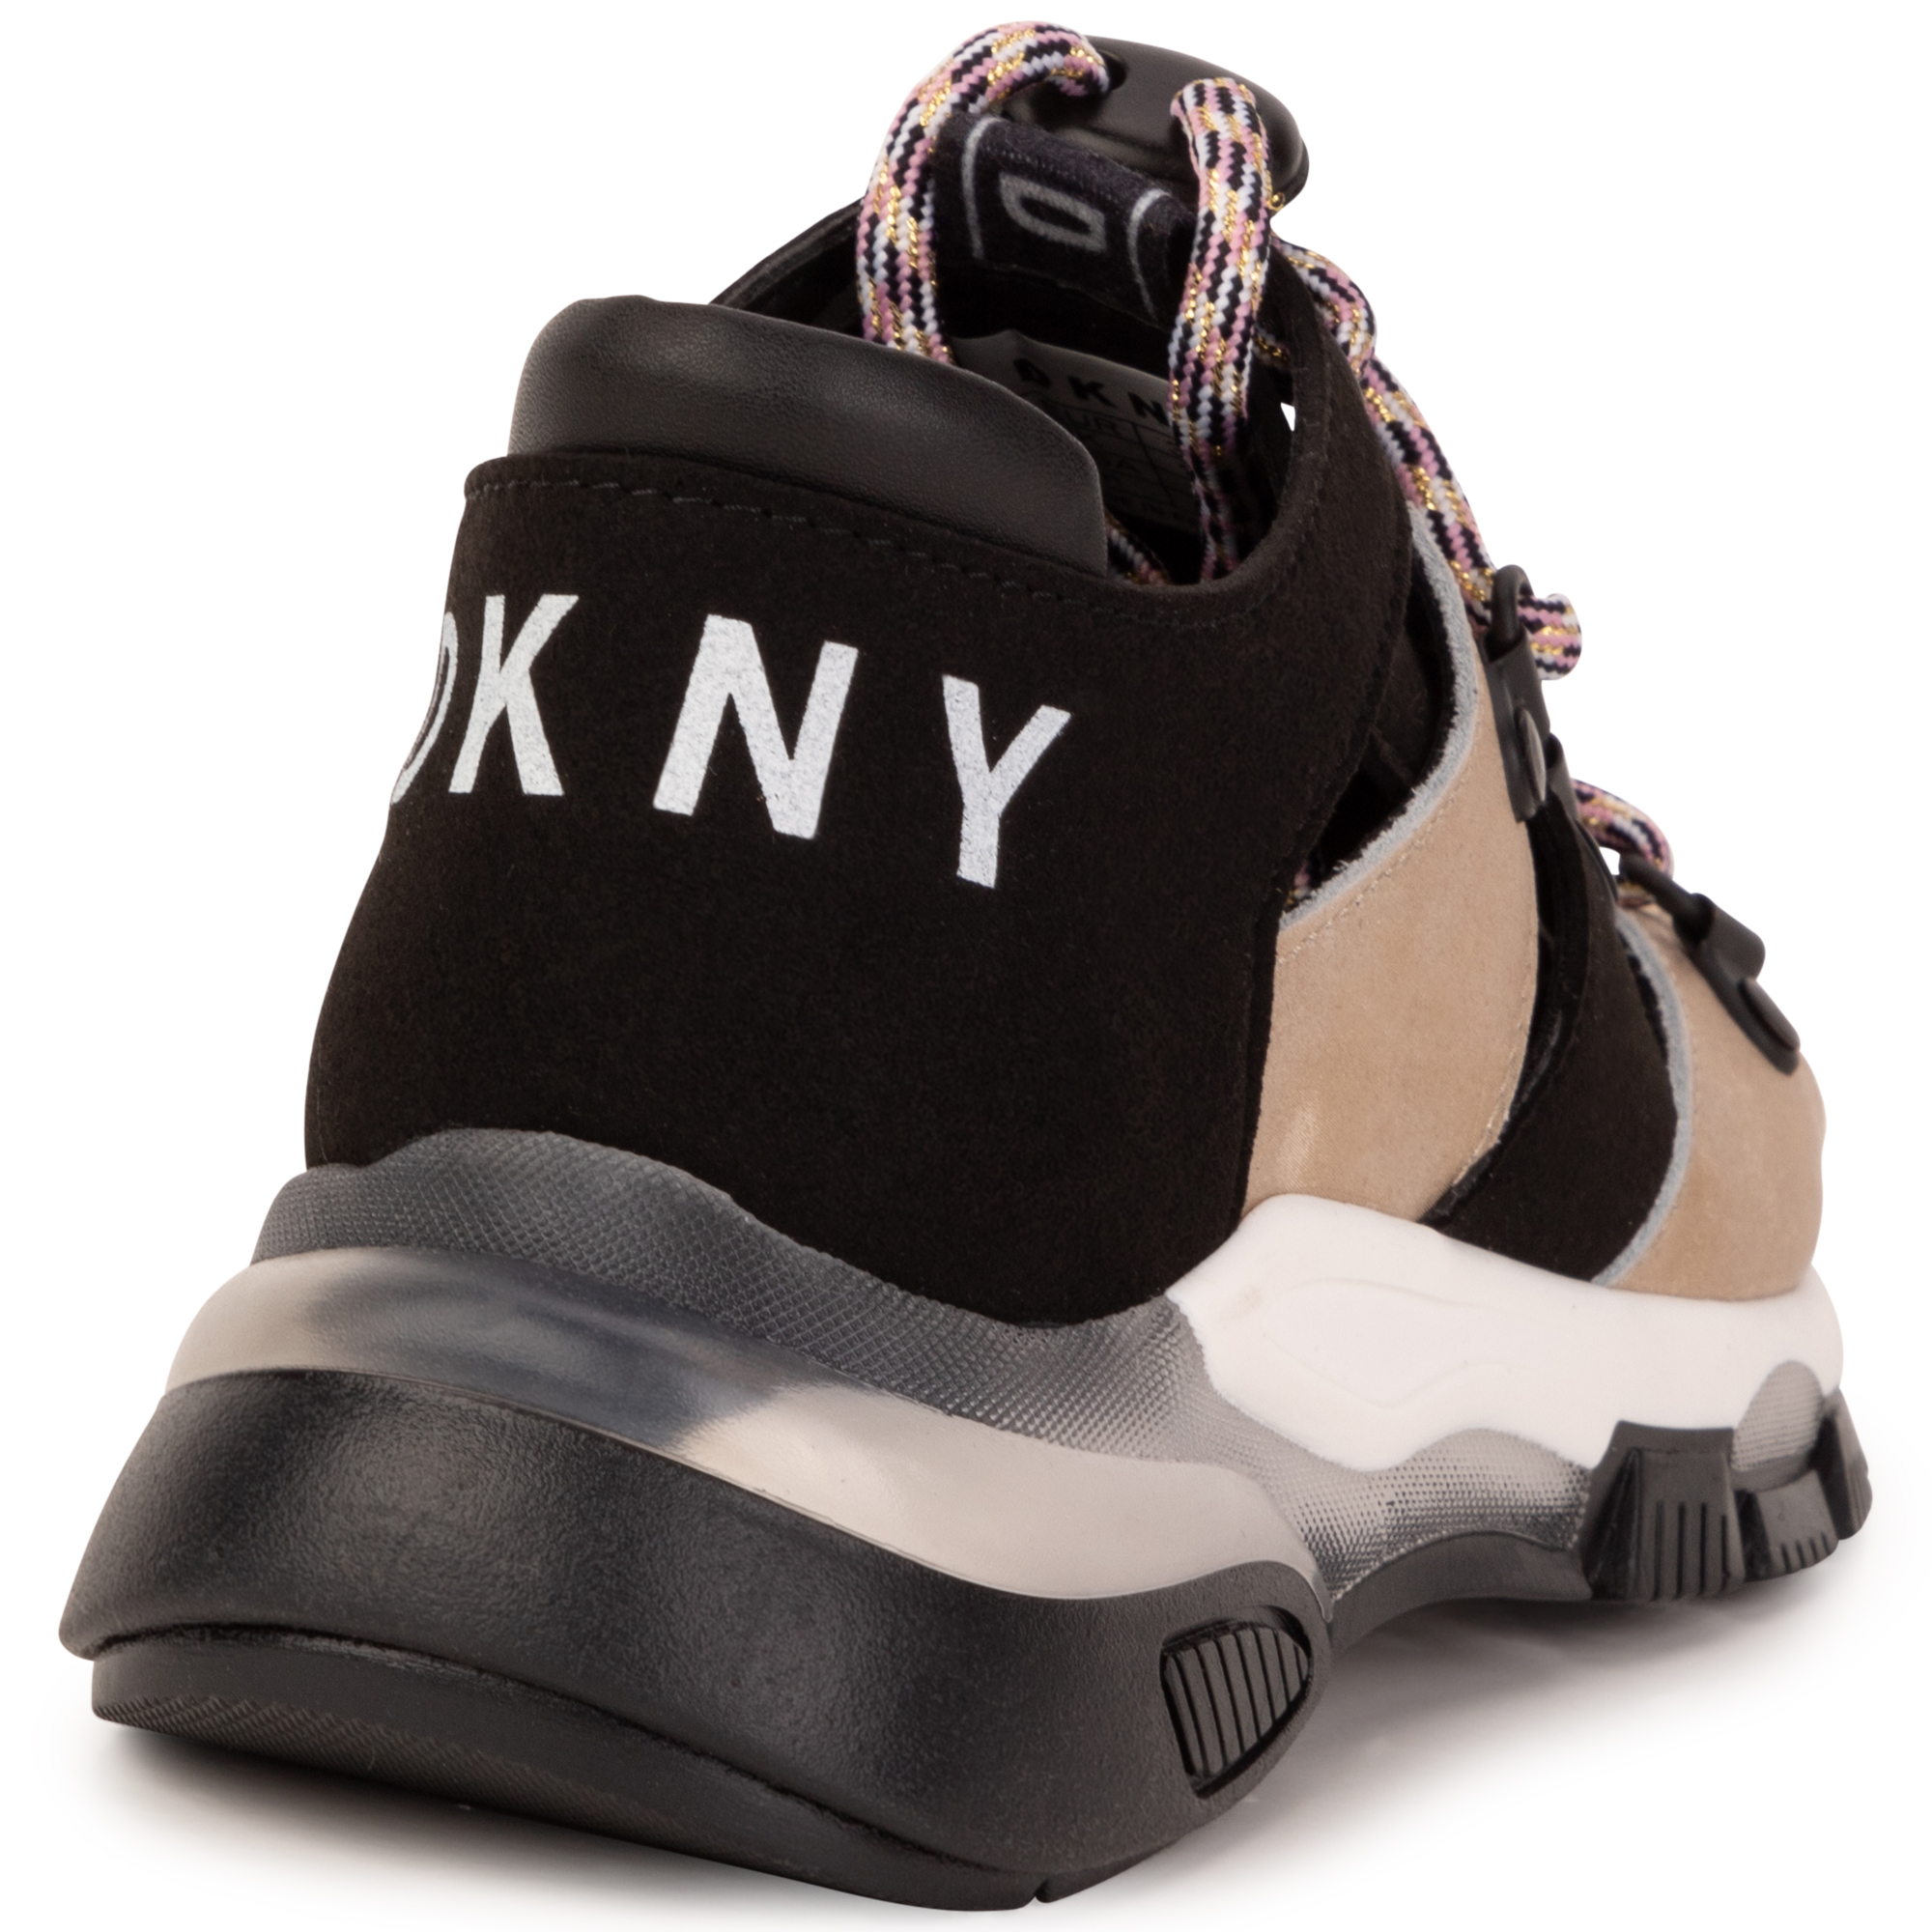 Open sneakers met veters DKNY Voor